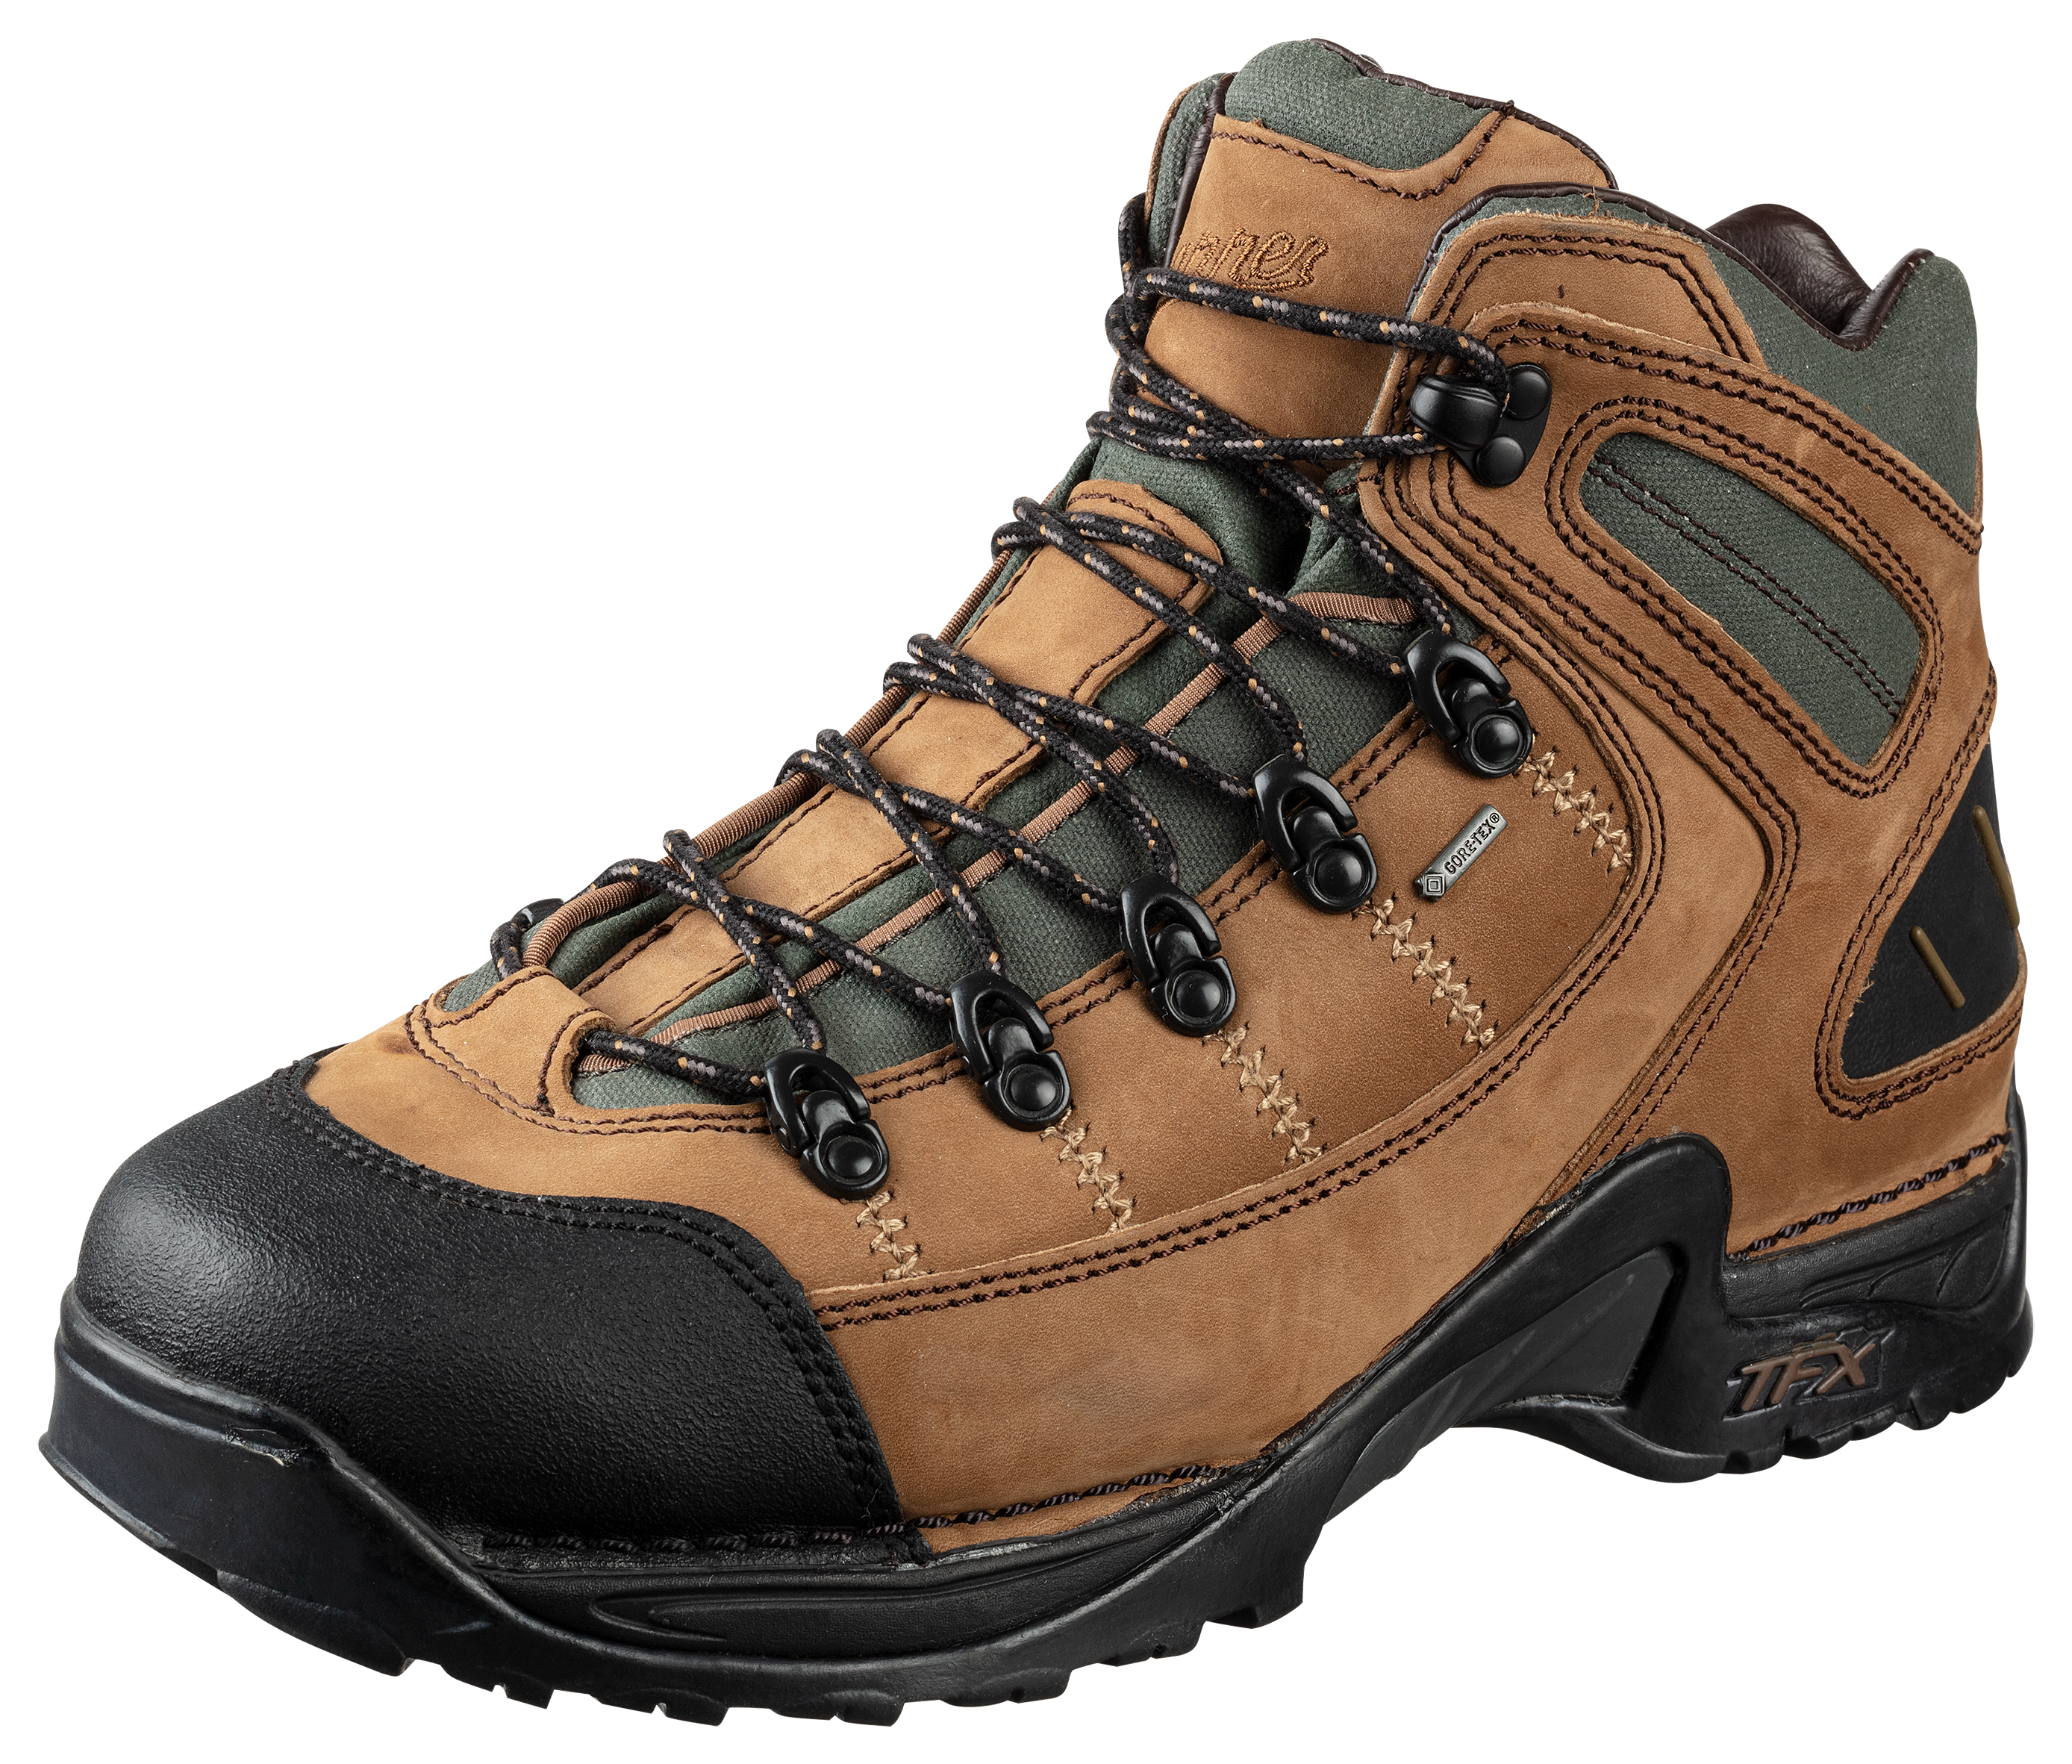 Danner 453 GORE-TEX Waterproof Hiking Boots for Men - Dark Tan - 10.5M